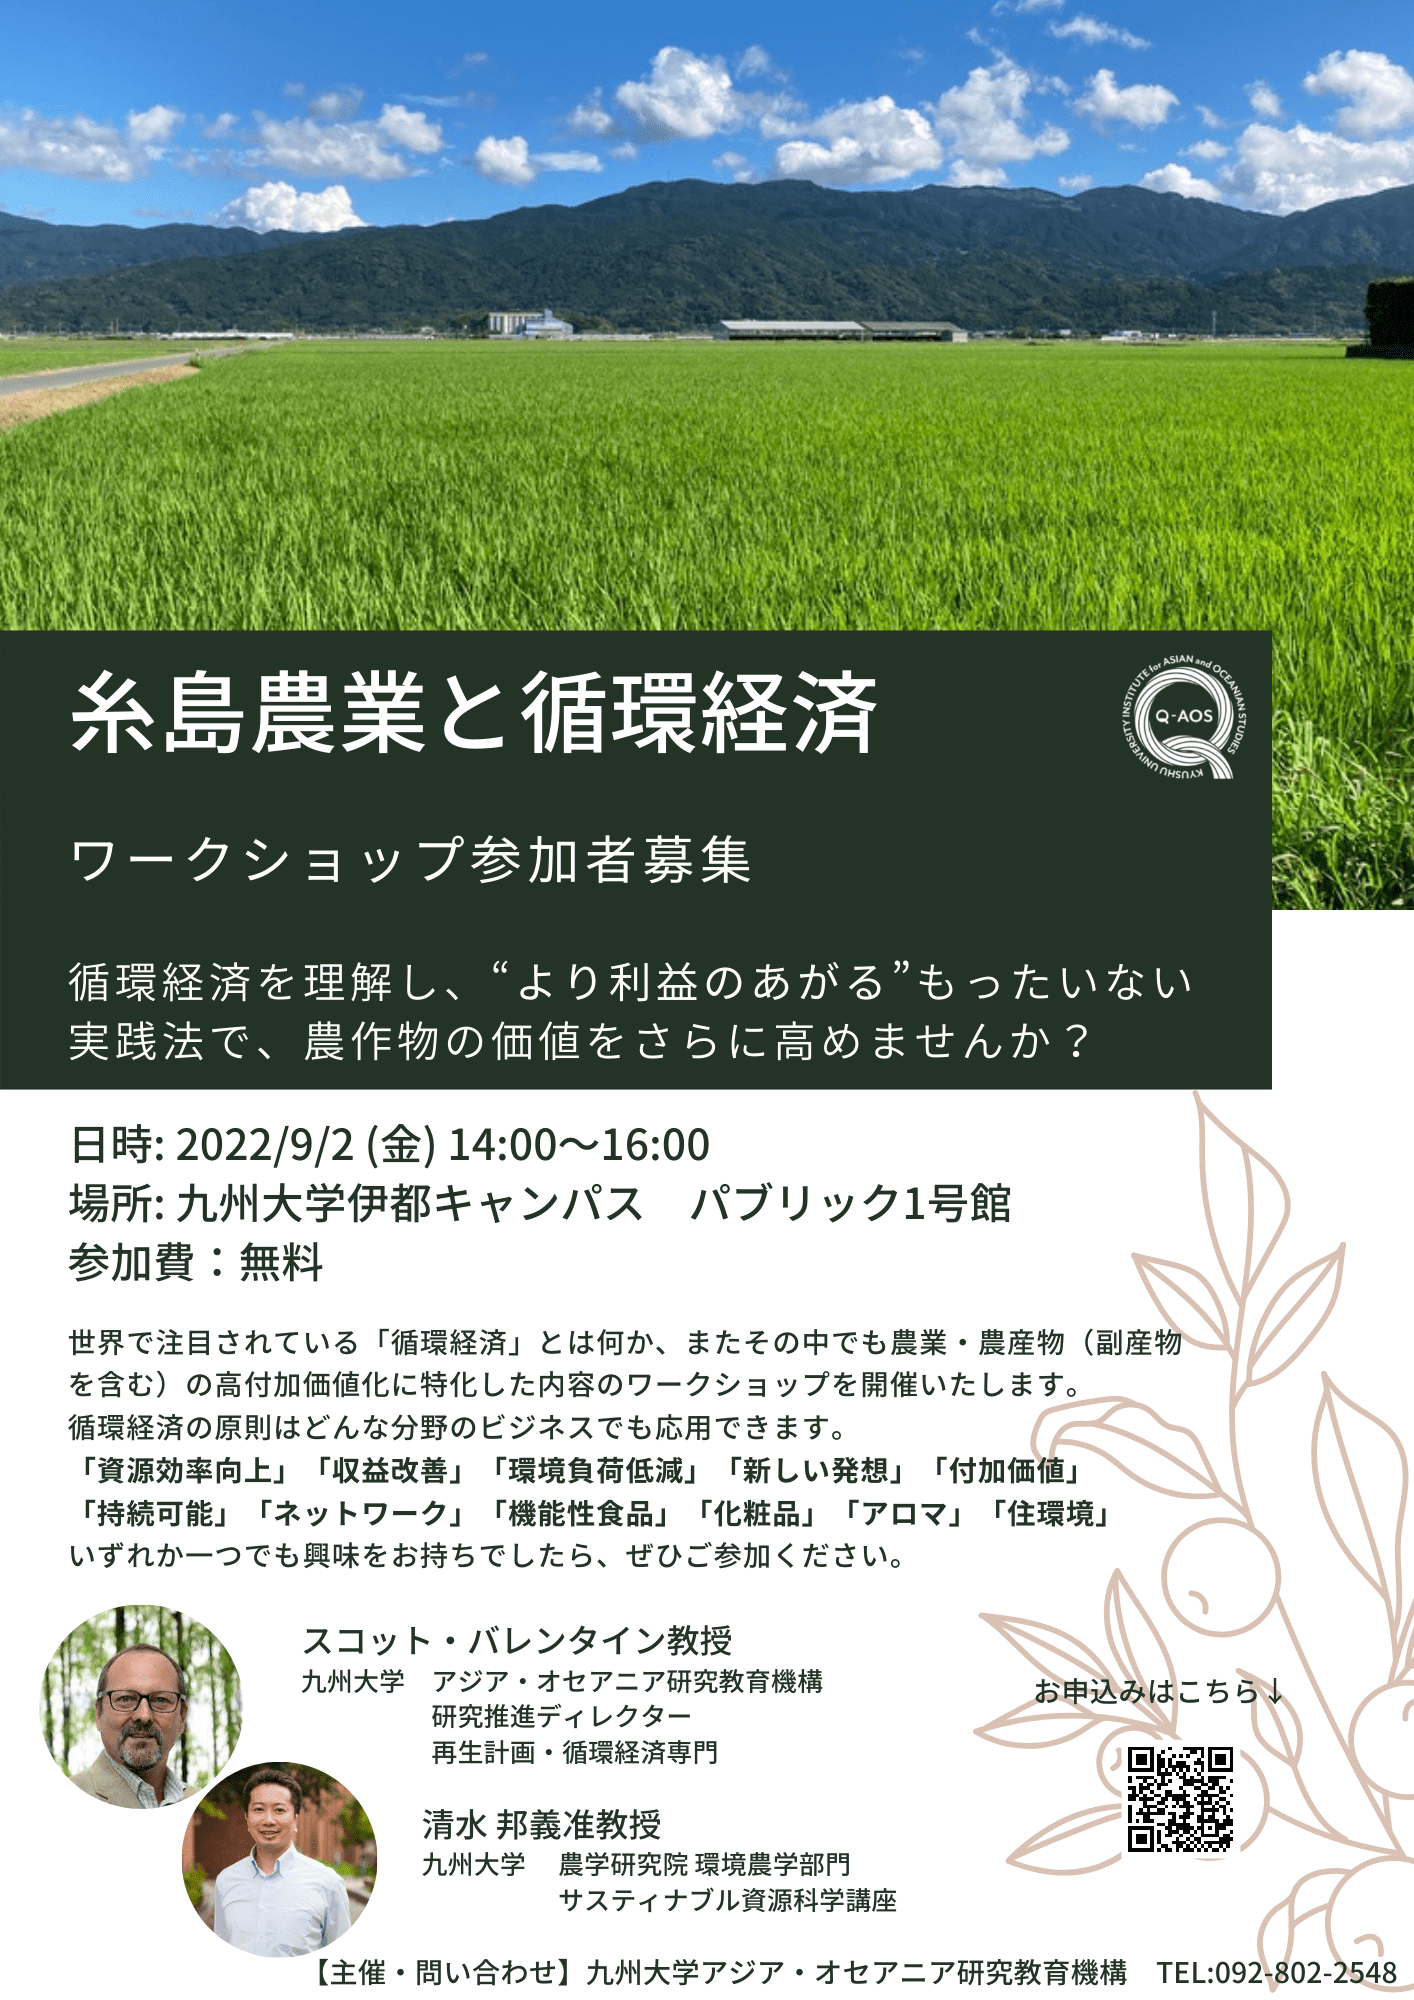 アイキャッチ画像：「糸島農業と循環経済」ワークショップ